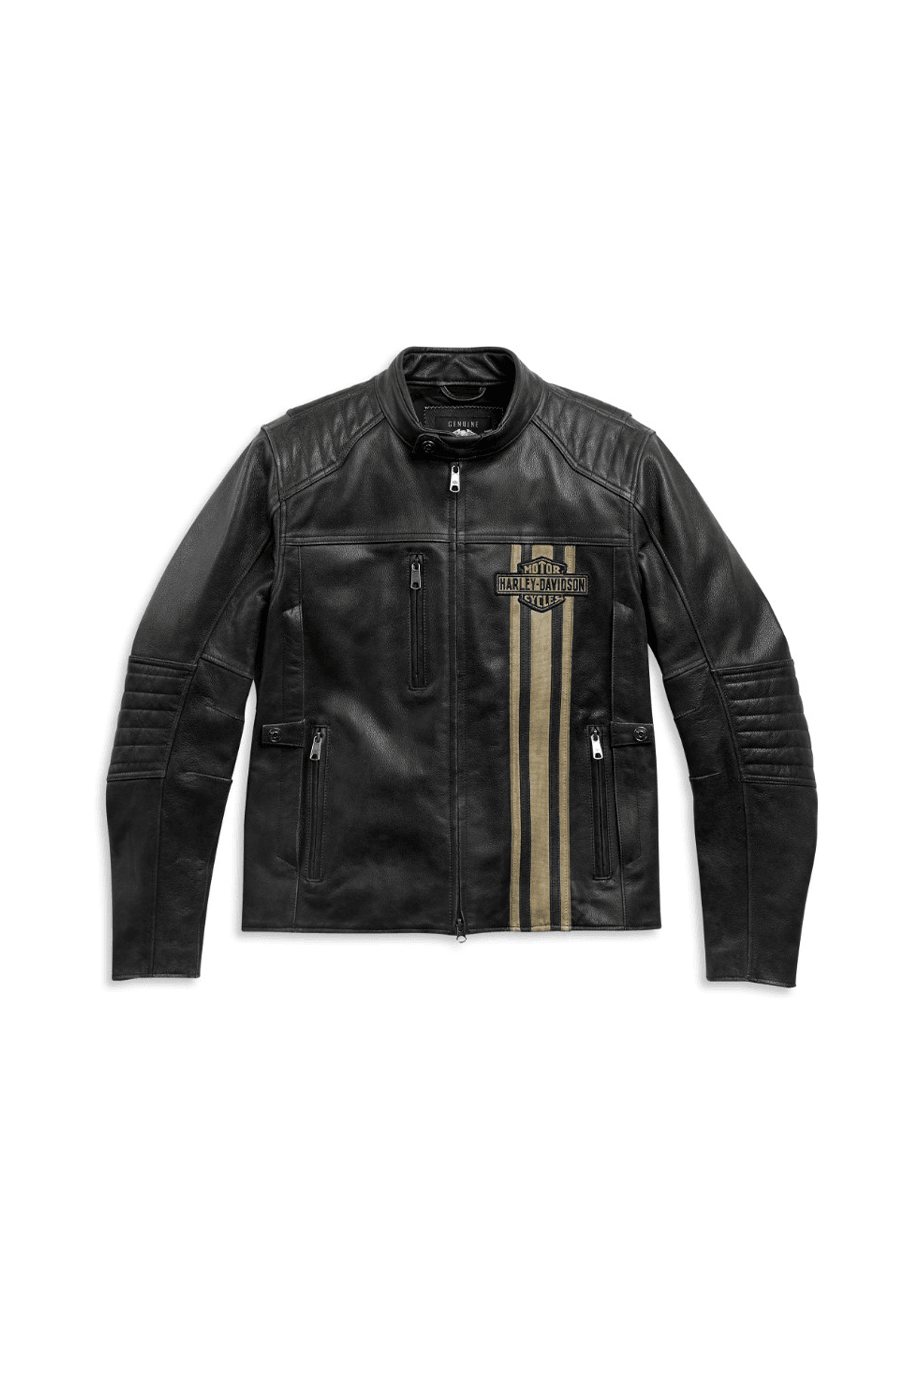 Harley-Davidson® Men's H-D Triple Vent Passing Link Ii Leather Jacket